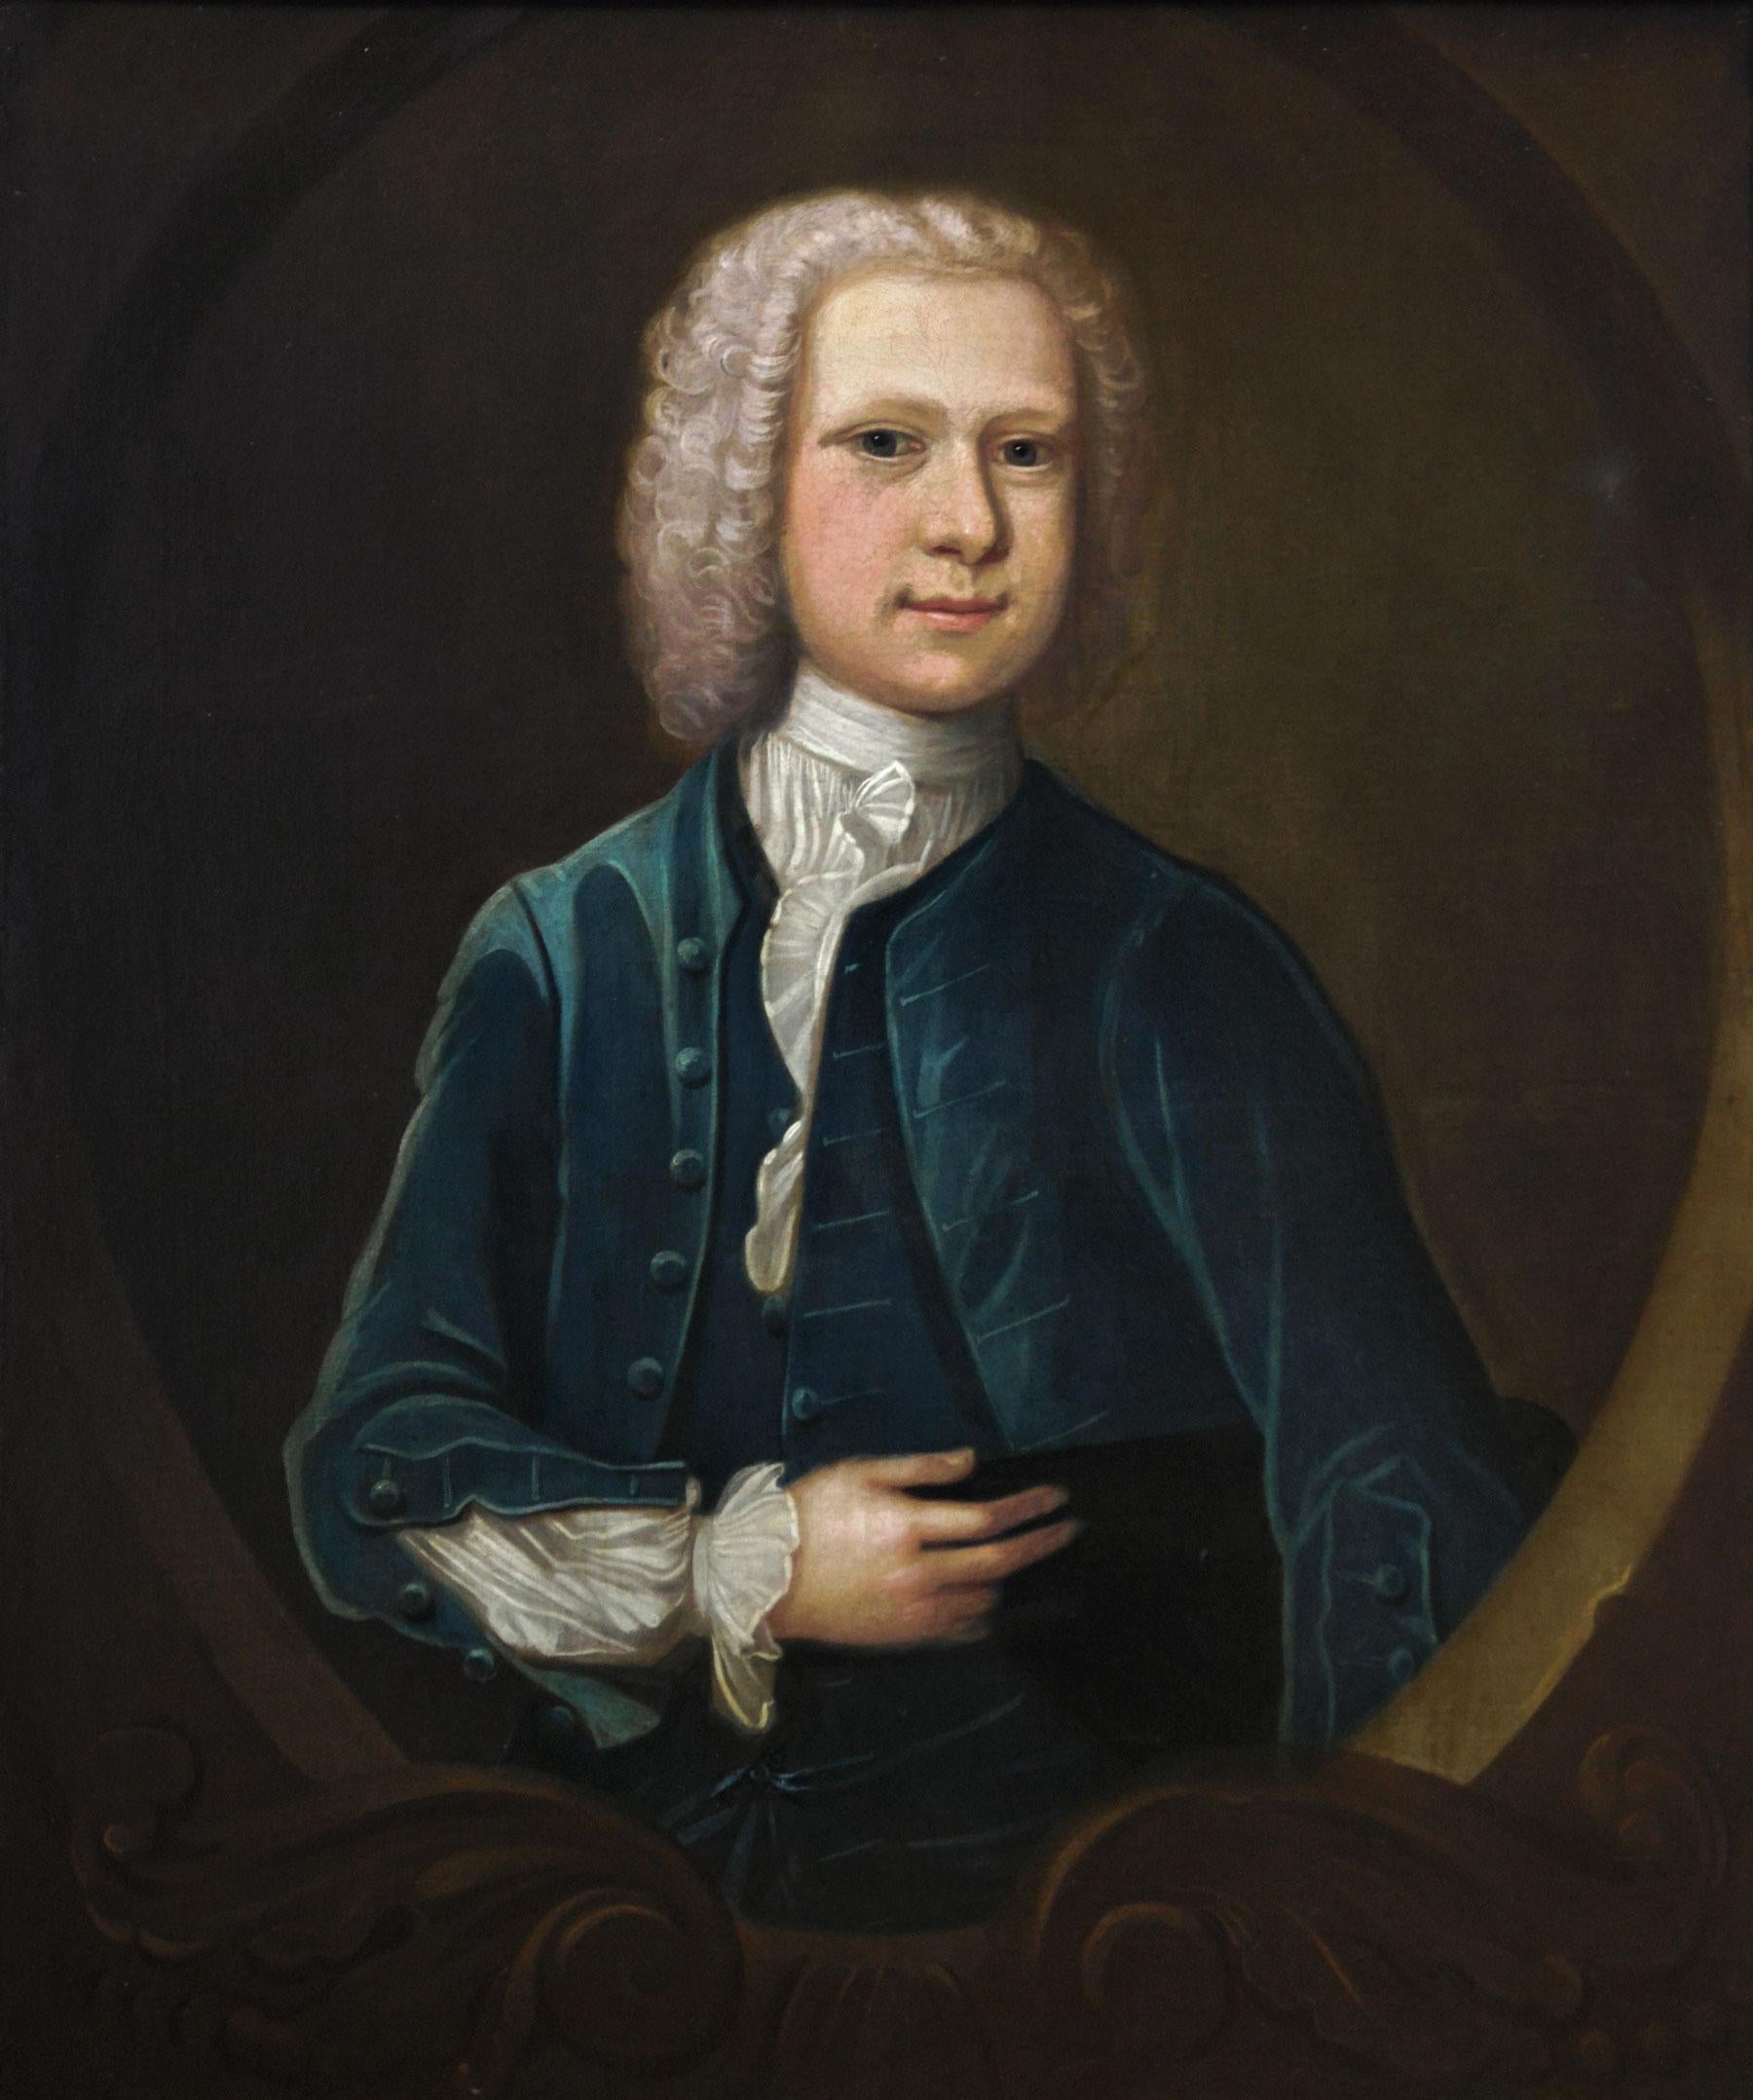 Porträt-Ölgemälde eines Herrn aus dem 18. Jahrhundert – Painting von Follower of Enoch Seeman the Younger